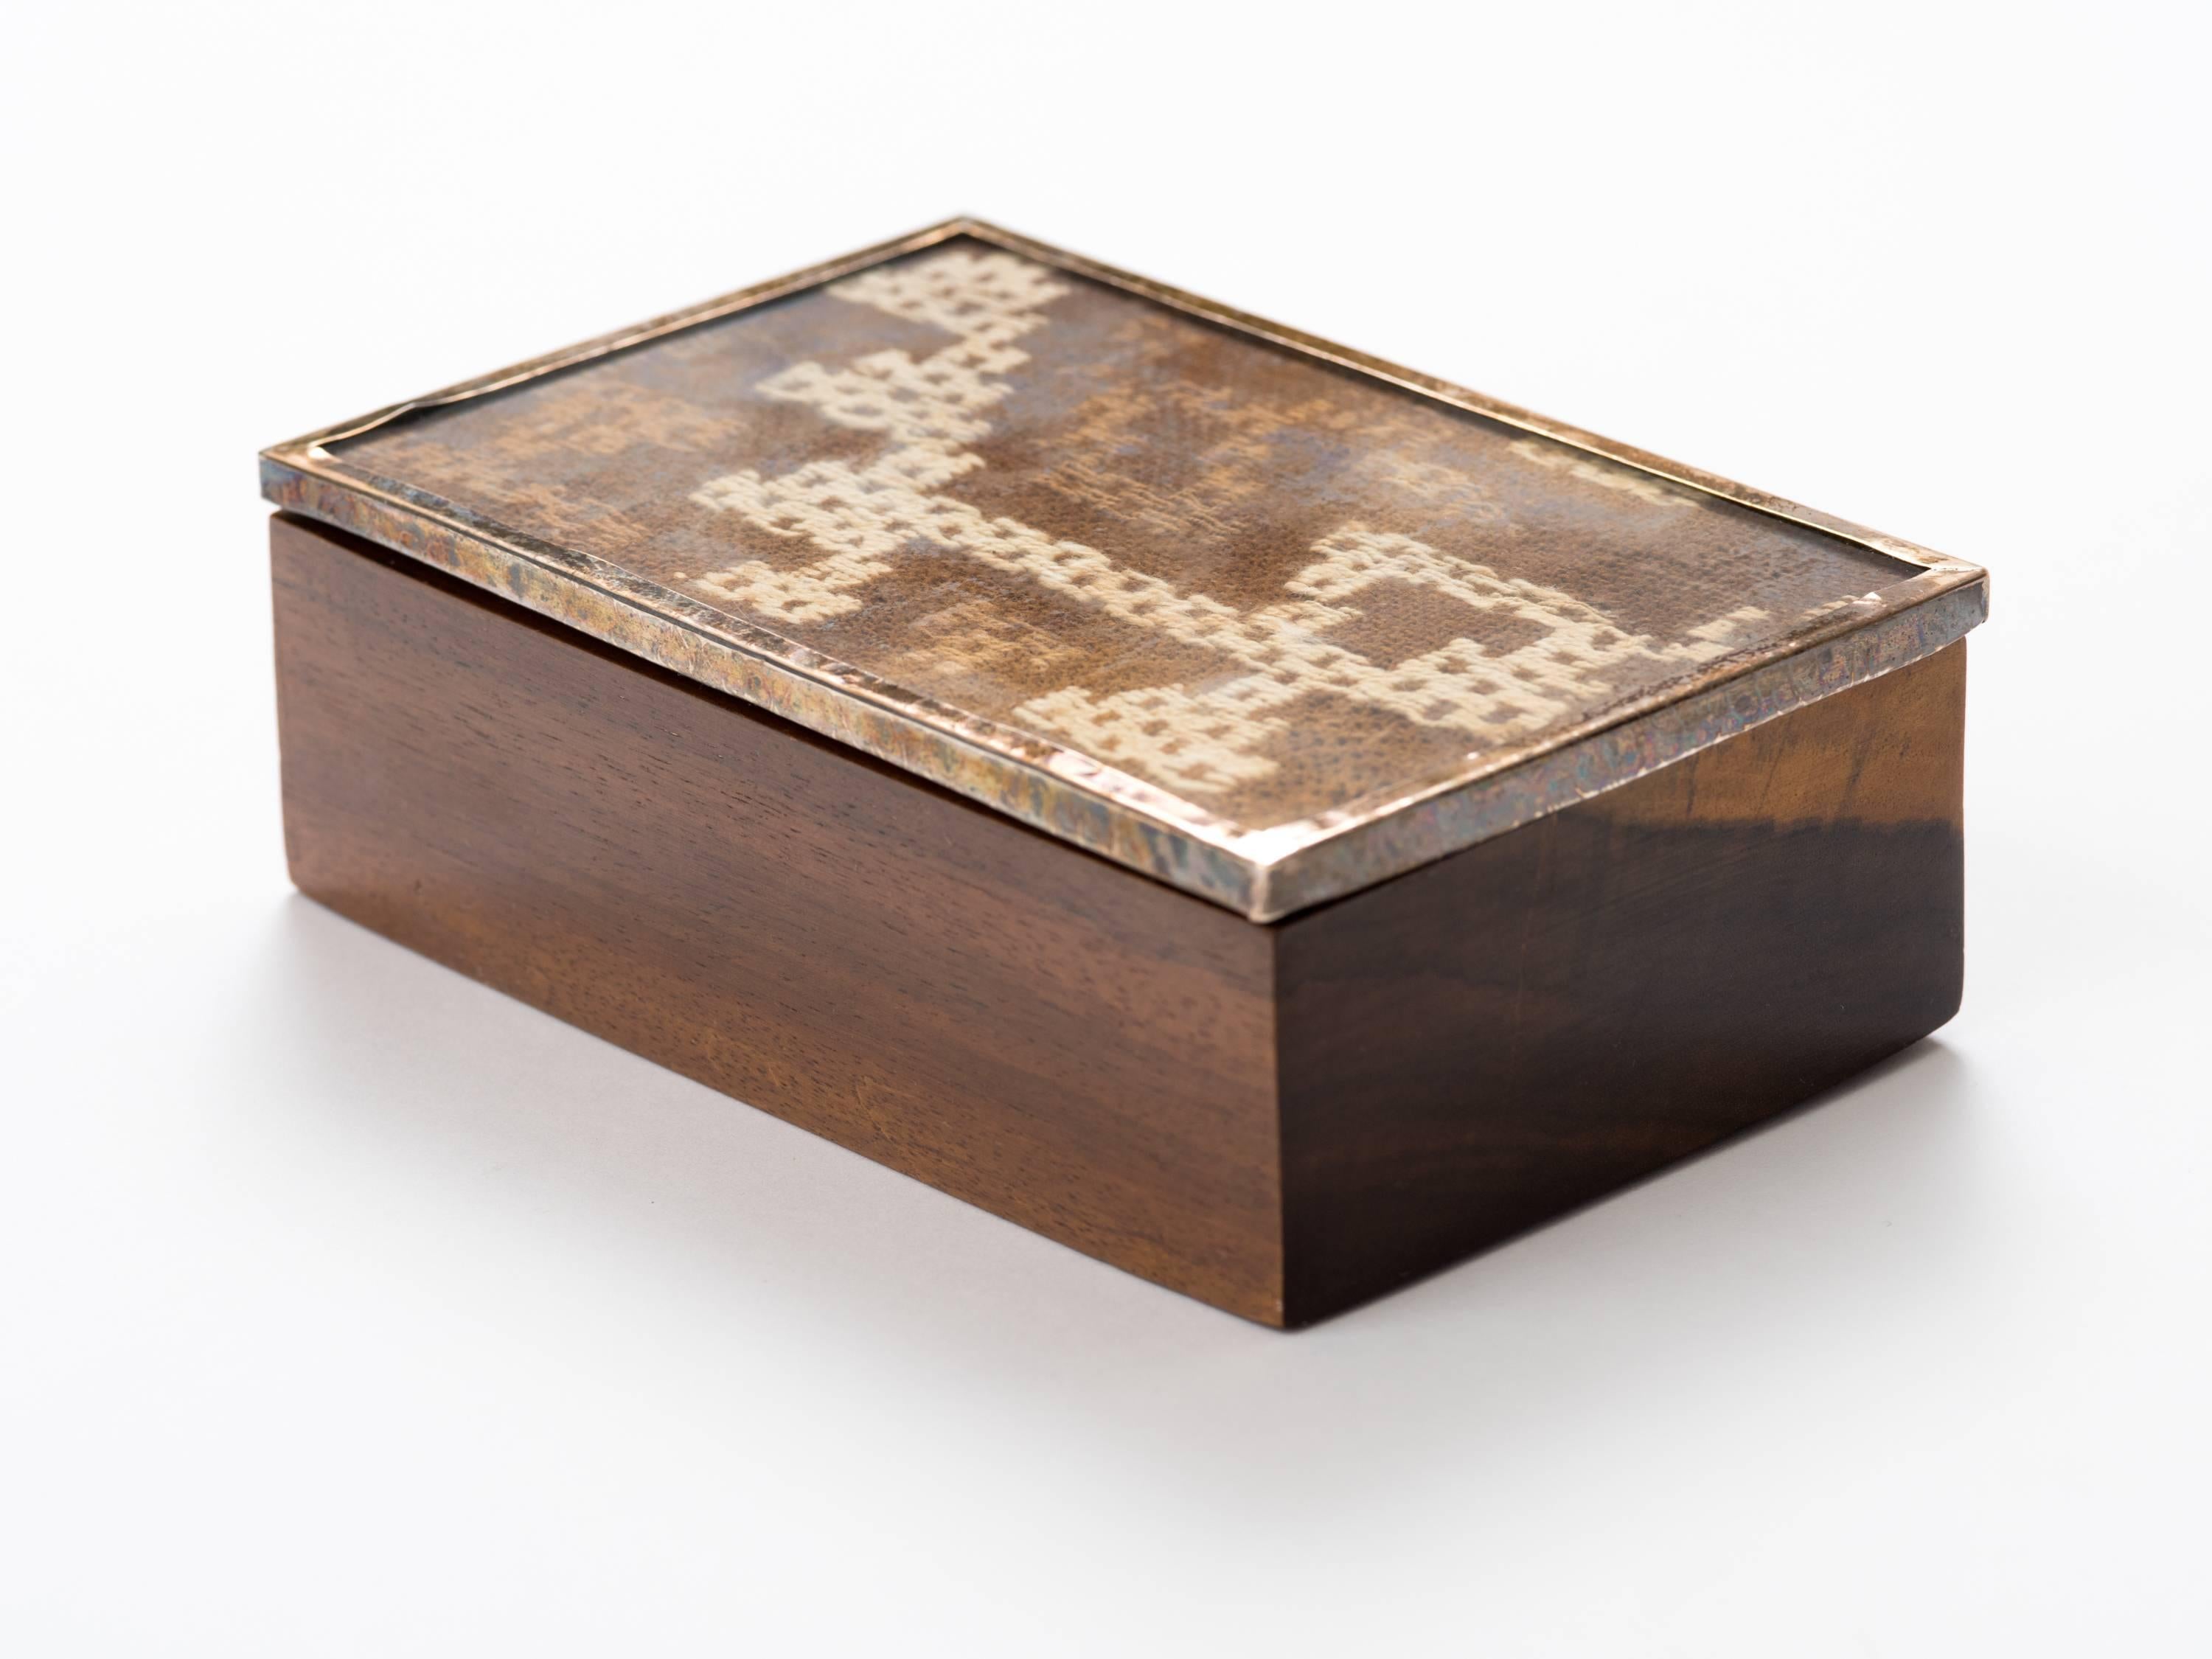 Boîte en bois exotique péruvien avec couvercle en textile Nazca ancien encadré de nickel.